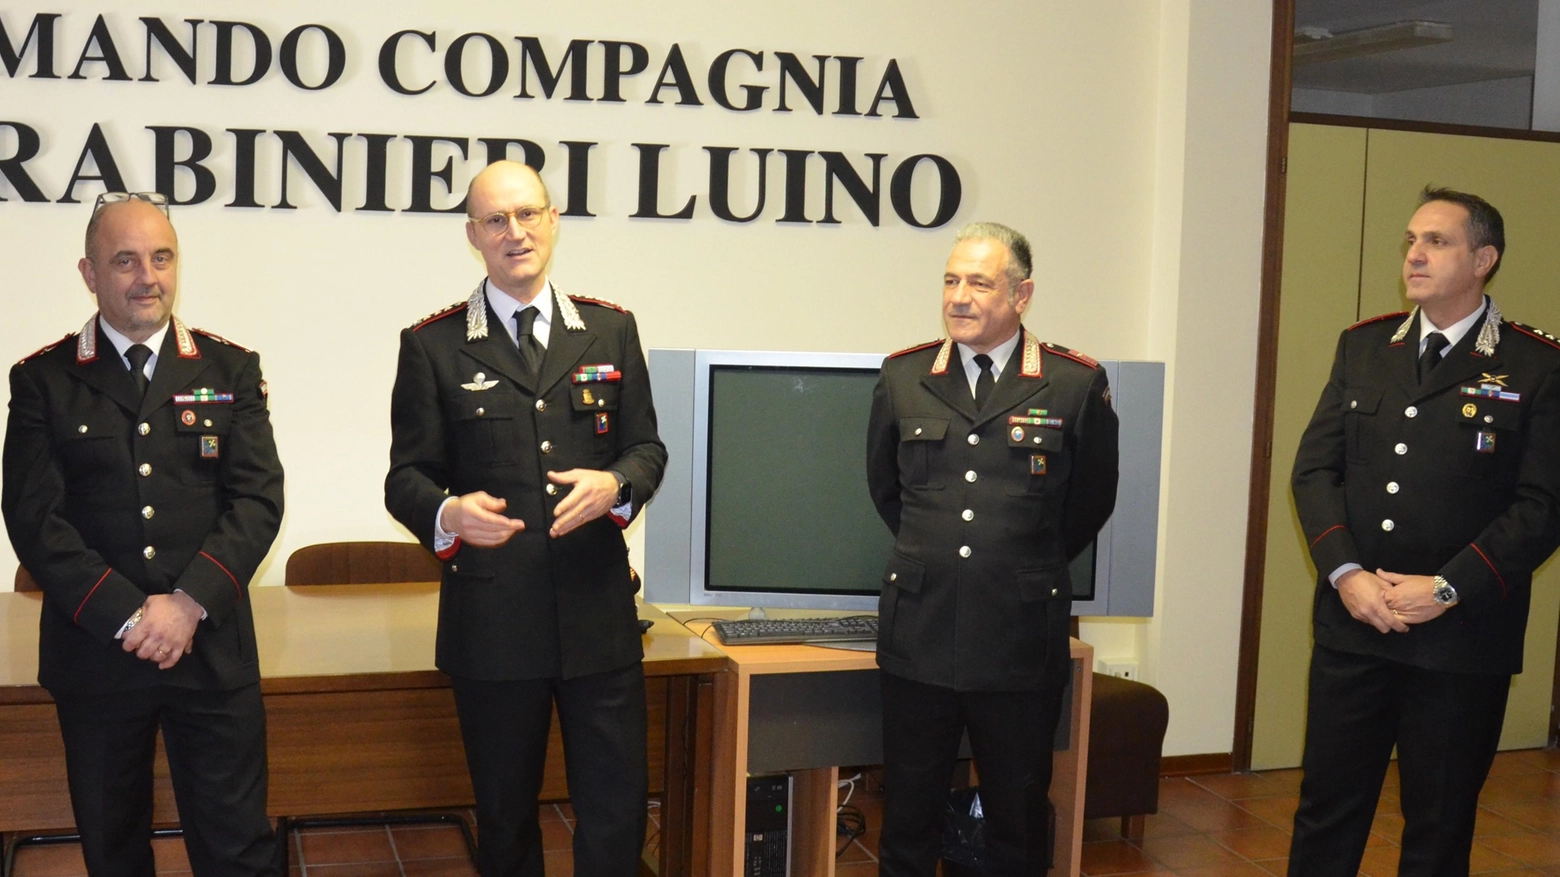 Cambio della guardia: da sinistra Alfonso Paolocci, Gianluca Piasentin, Alfonso Benincas